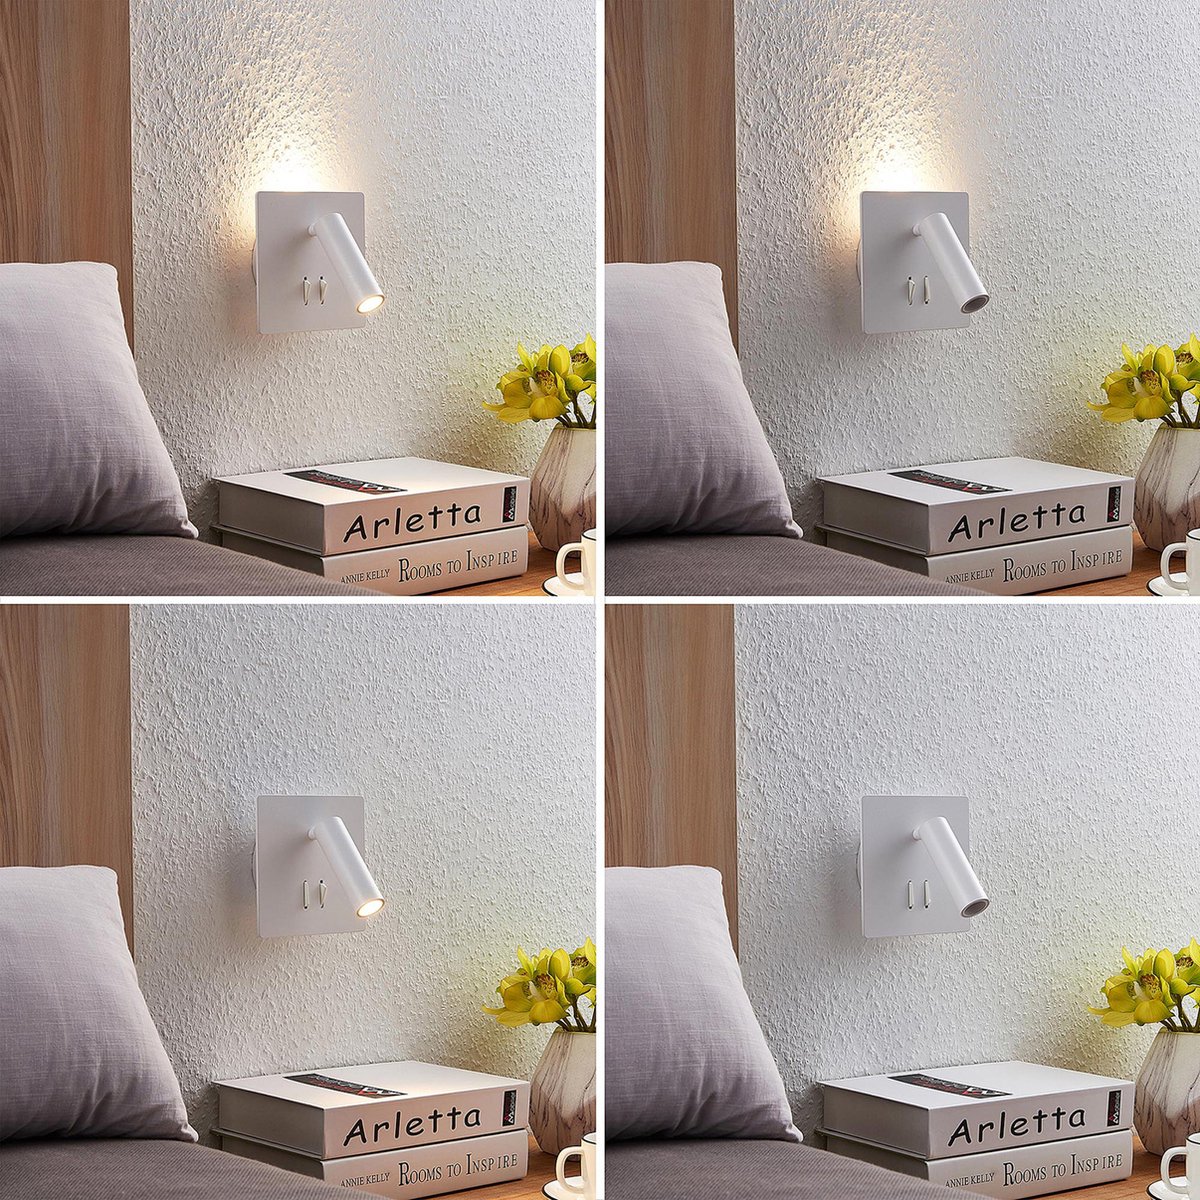 Lucande - LED wandlamp - 2 lichts - aluminium - H: 14 cm - mat wit - Inclusief lichtbronnen